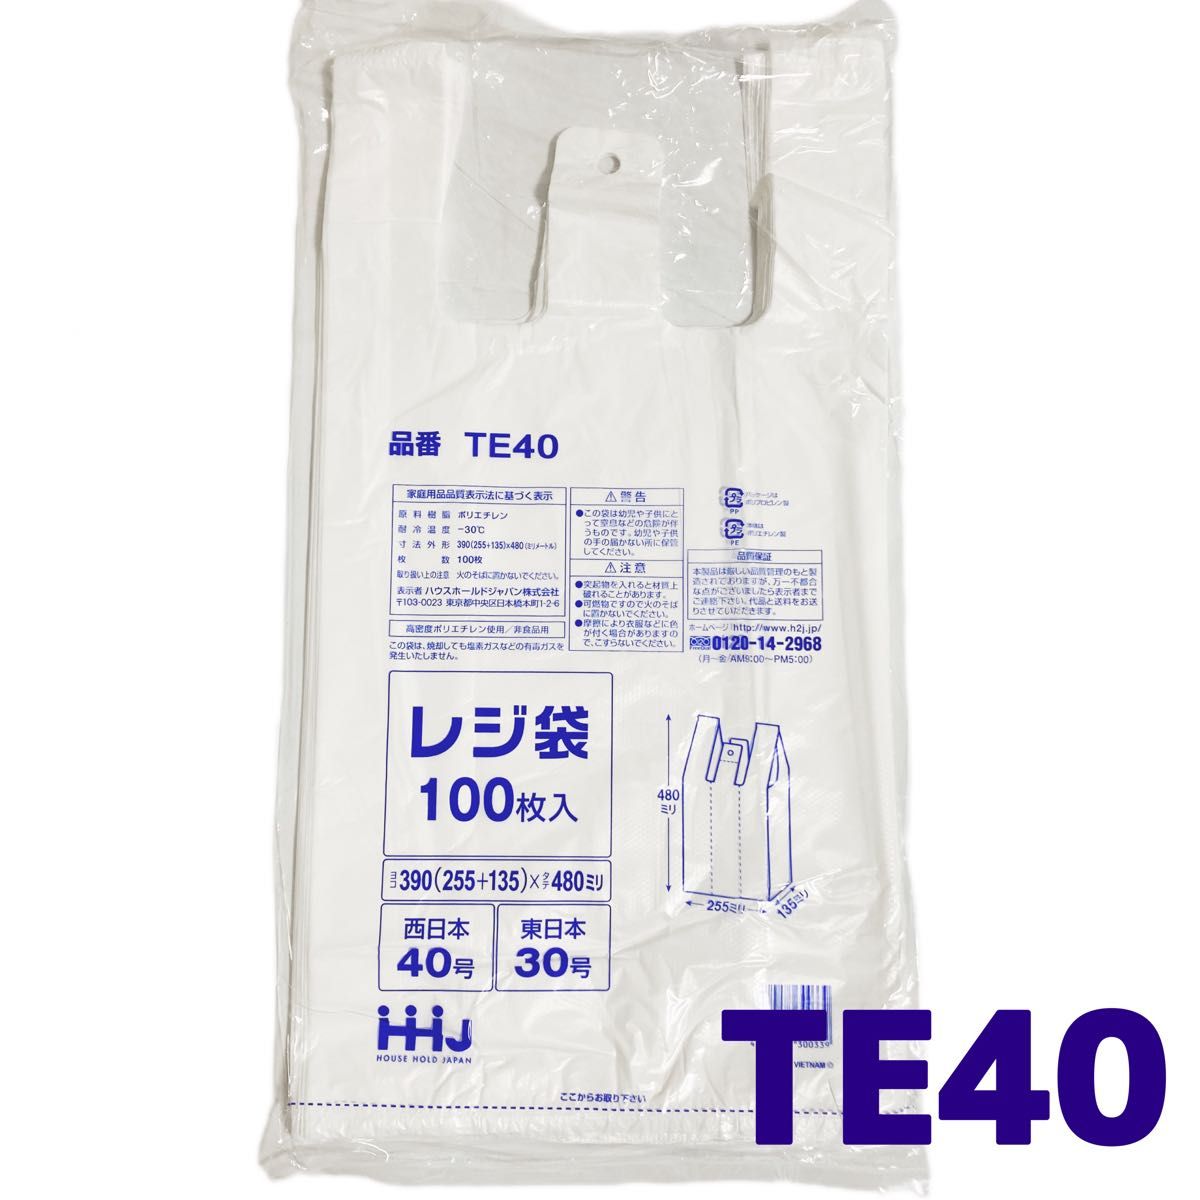 レジ袋 L 100枚 乳白色 無地 エコバッグ 手提げ袋 買い物袋 スーパーの袋 ビニール袋 ポリ袋 ゴミ袋 TE40